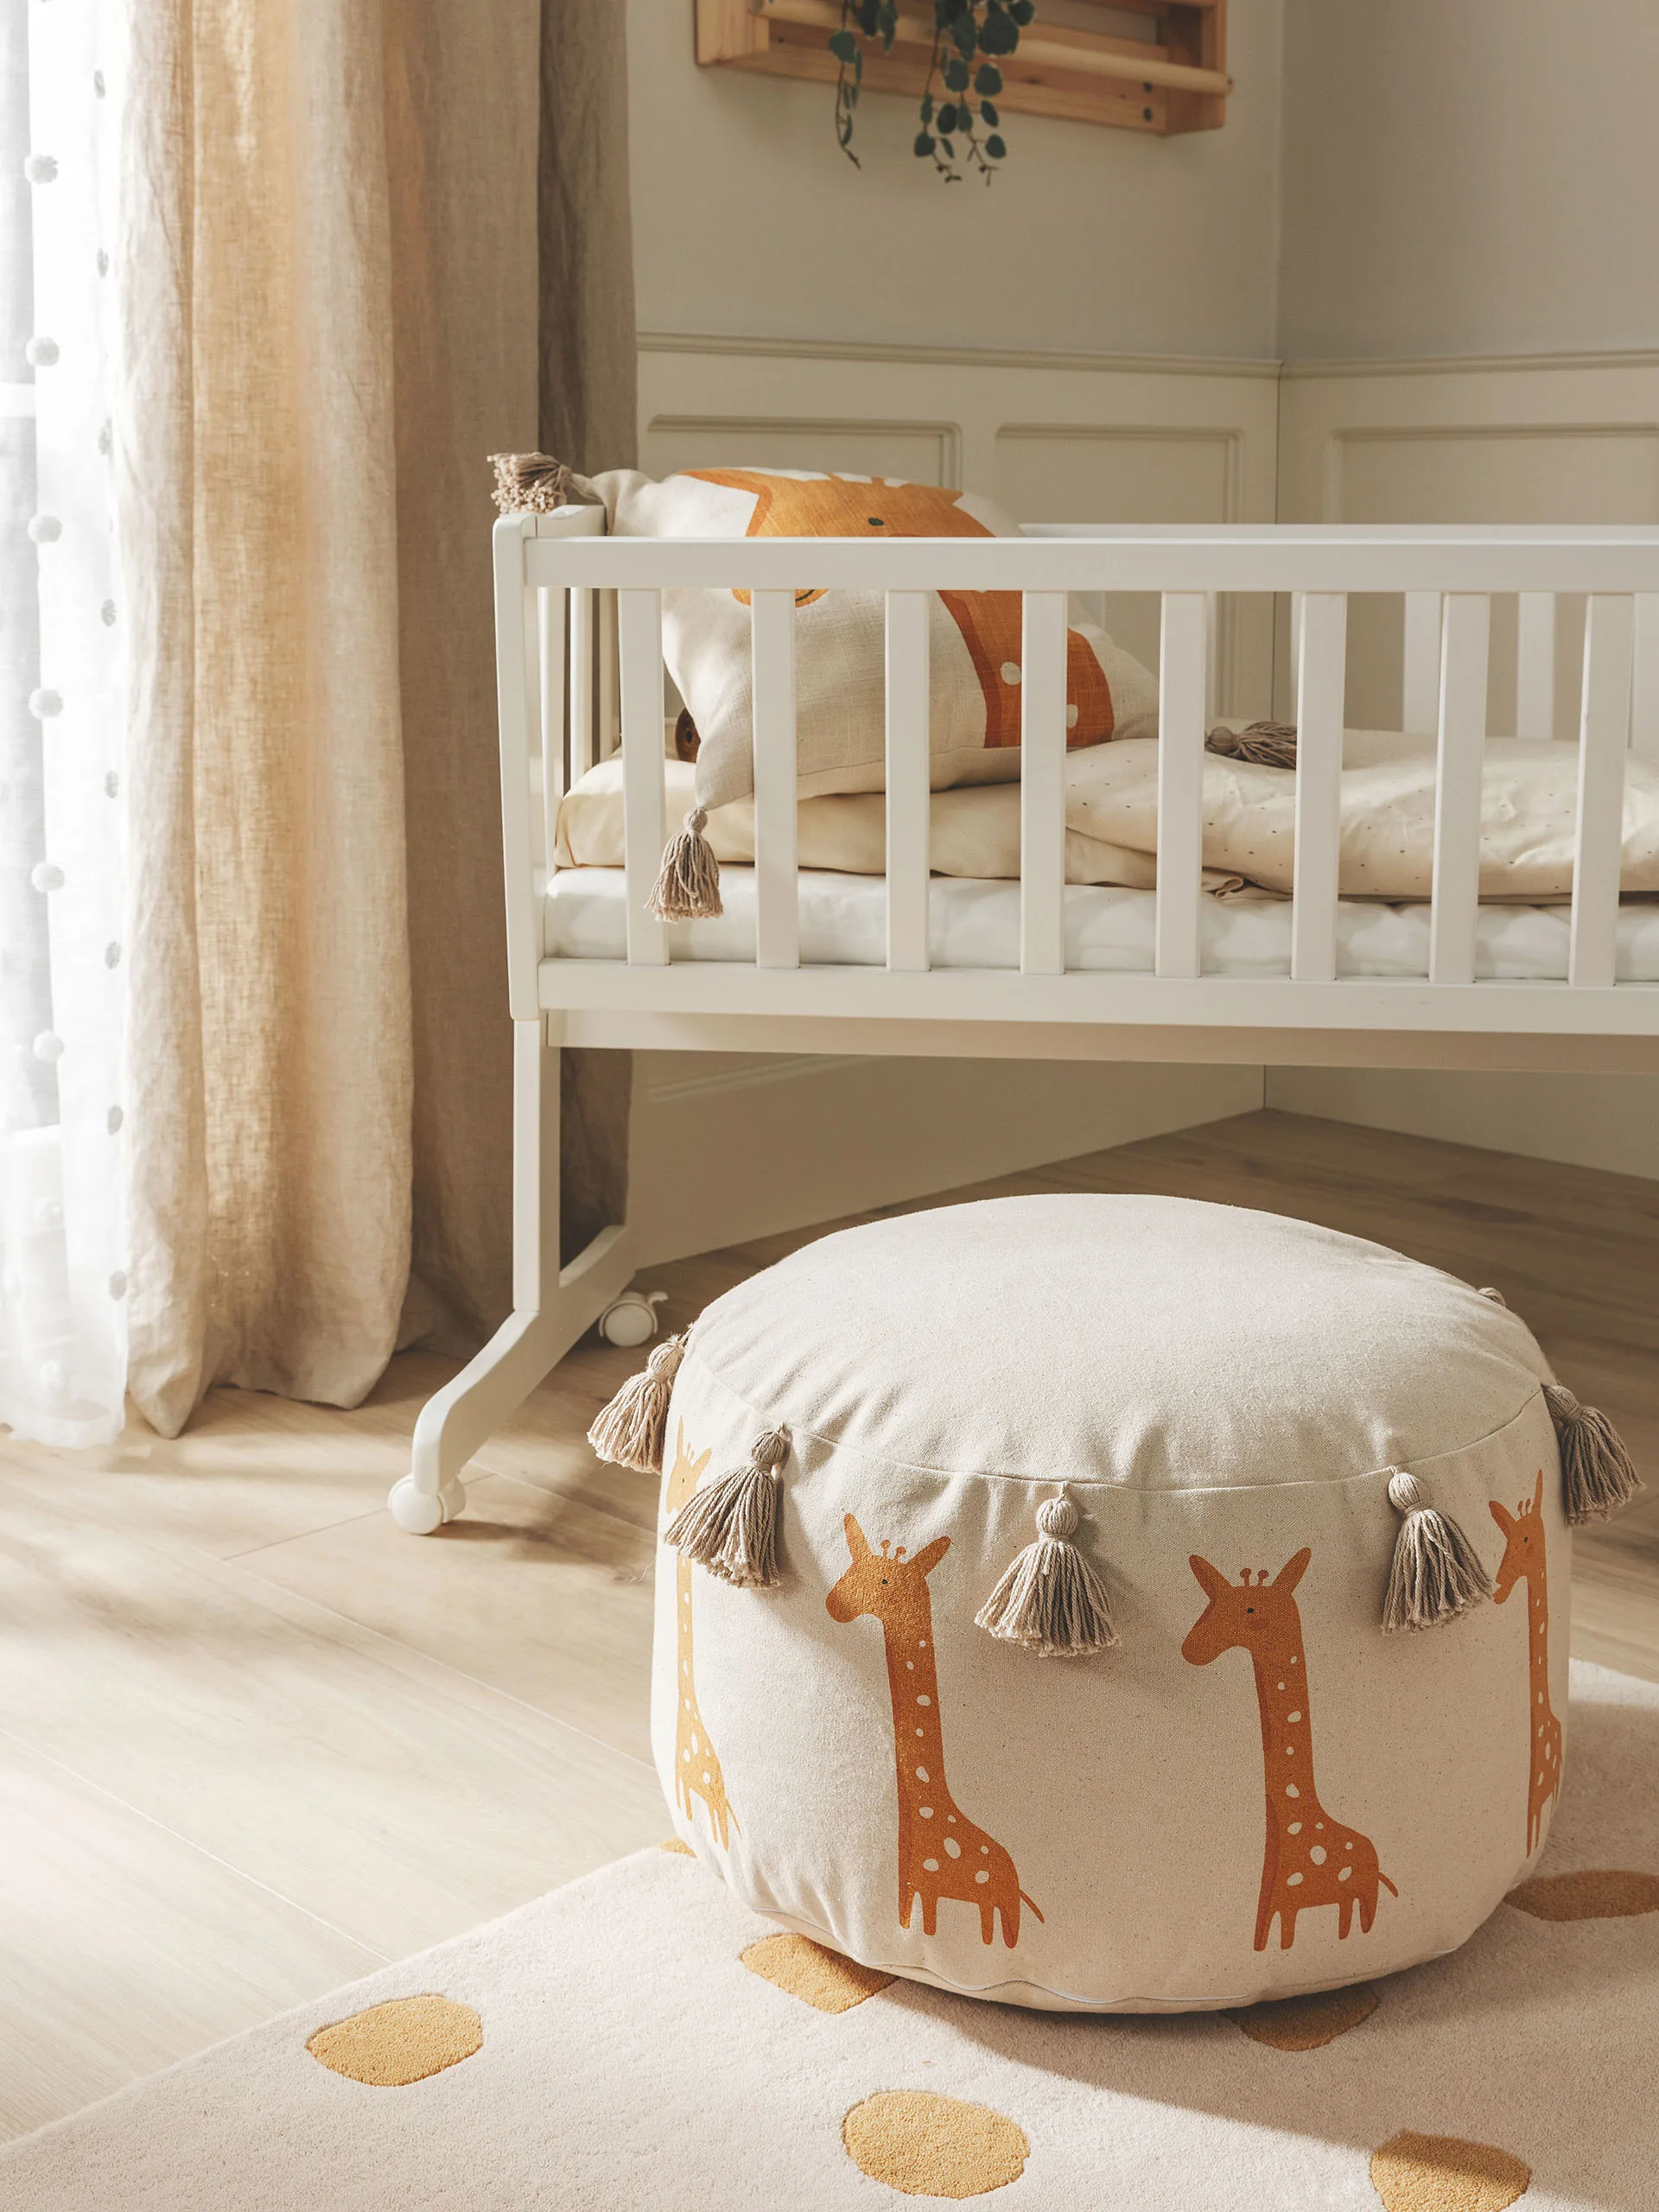 Kinderzimmer eingerichtet im Safari-Look mit einem Pouf im Giraffen-Design vor einem Baby-Gitterbett und einem Giraffen-Kissen im sowie einem beigen Teppich mit gelben Tupfern vor dem Bett